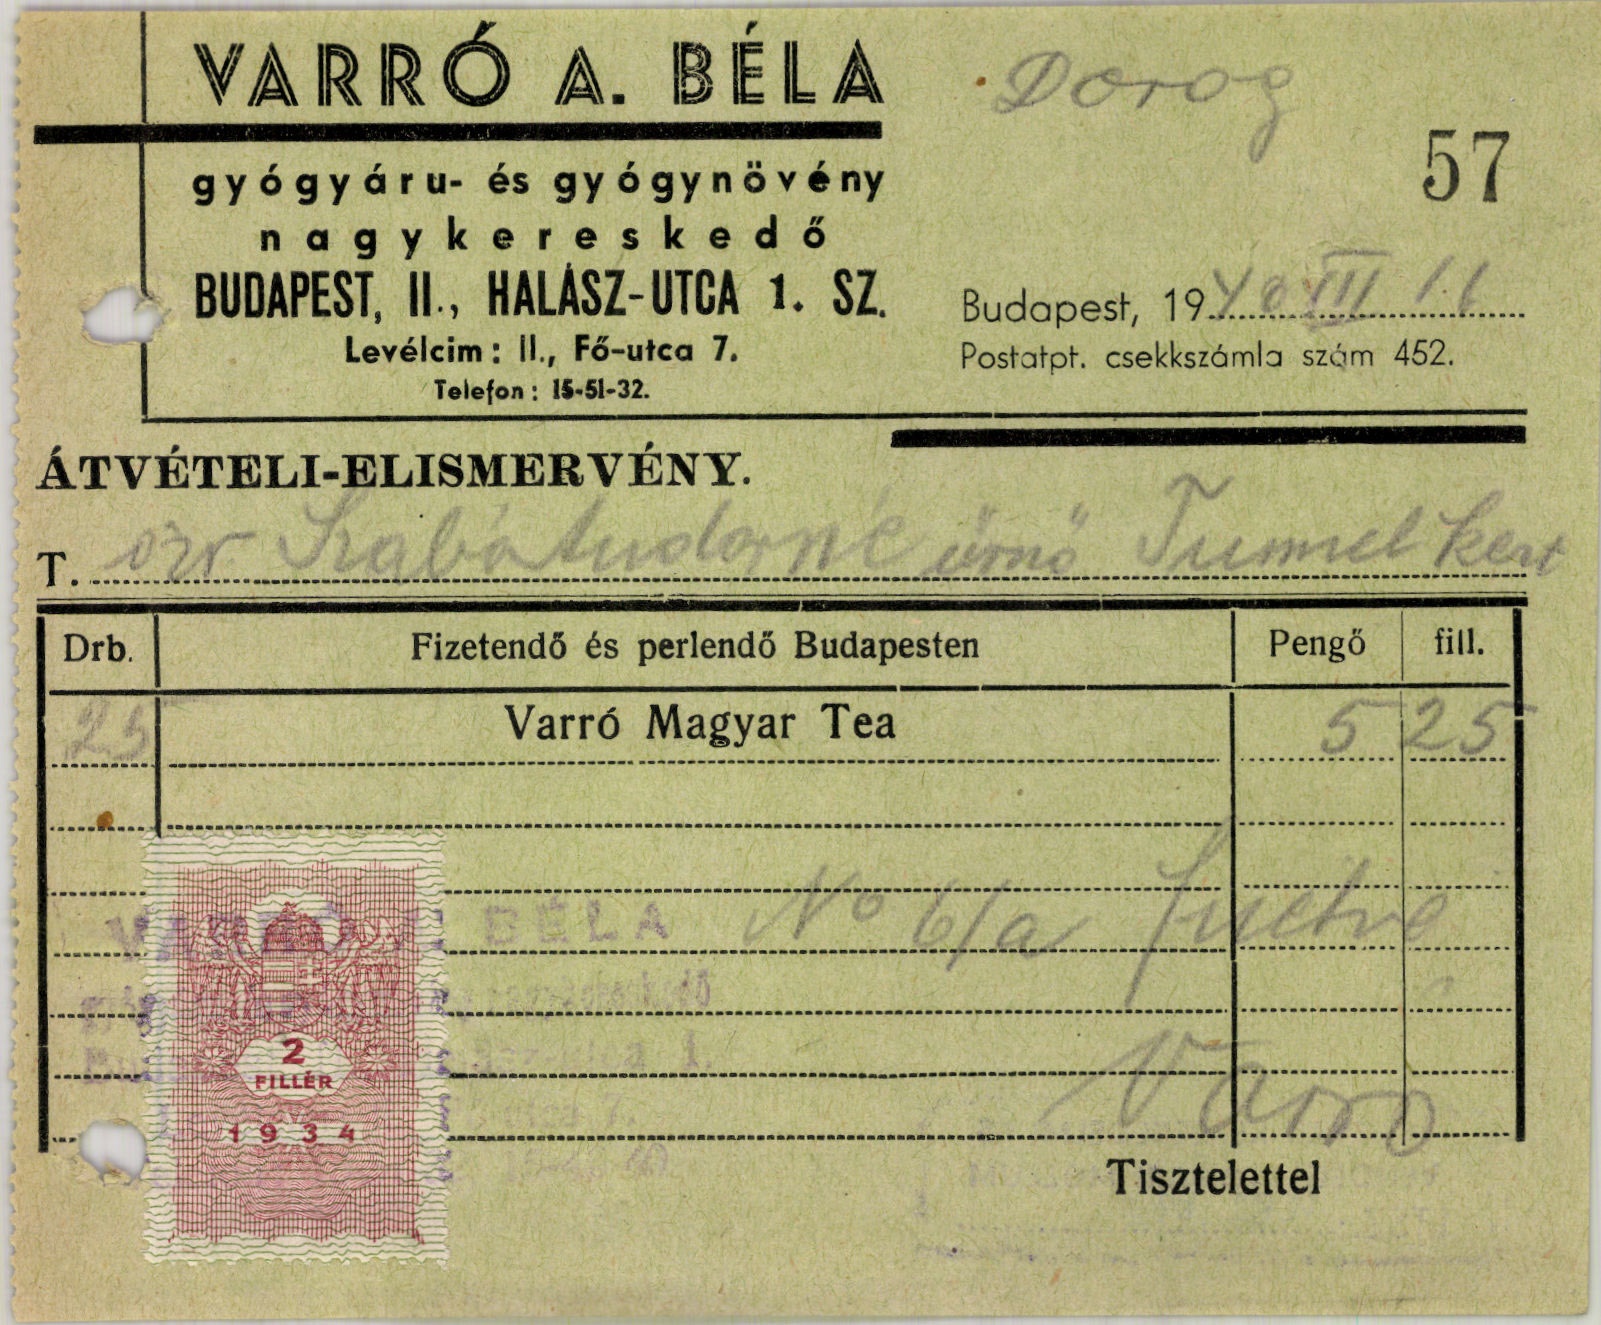 Varró A. Béla gyógyáru- és gyógynövény nagykereskedő (Magyar Kereskedelmi és Vendéglátóipari Múzeum CC BY-NC-SA)